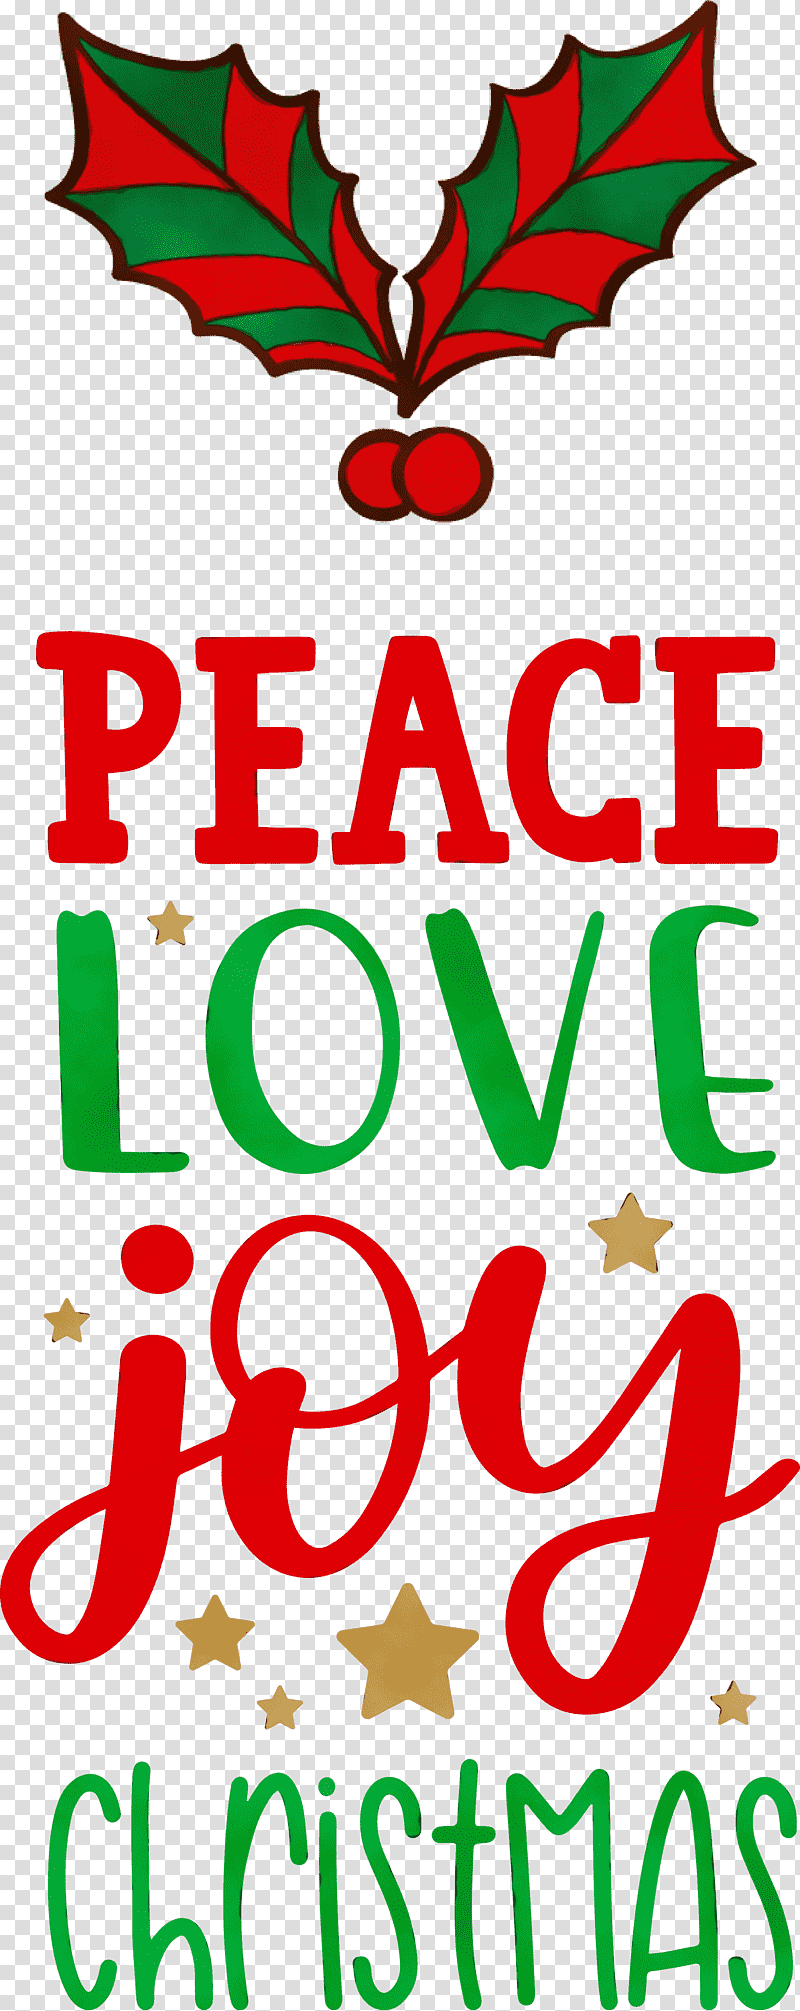 Floral design, Peace, Love, Joy, Christmas , Watercolor, Paint transparent background PNG clipart